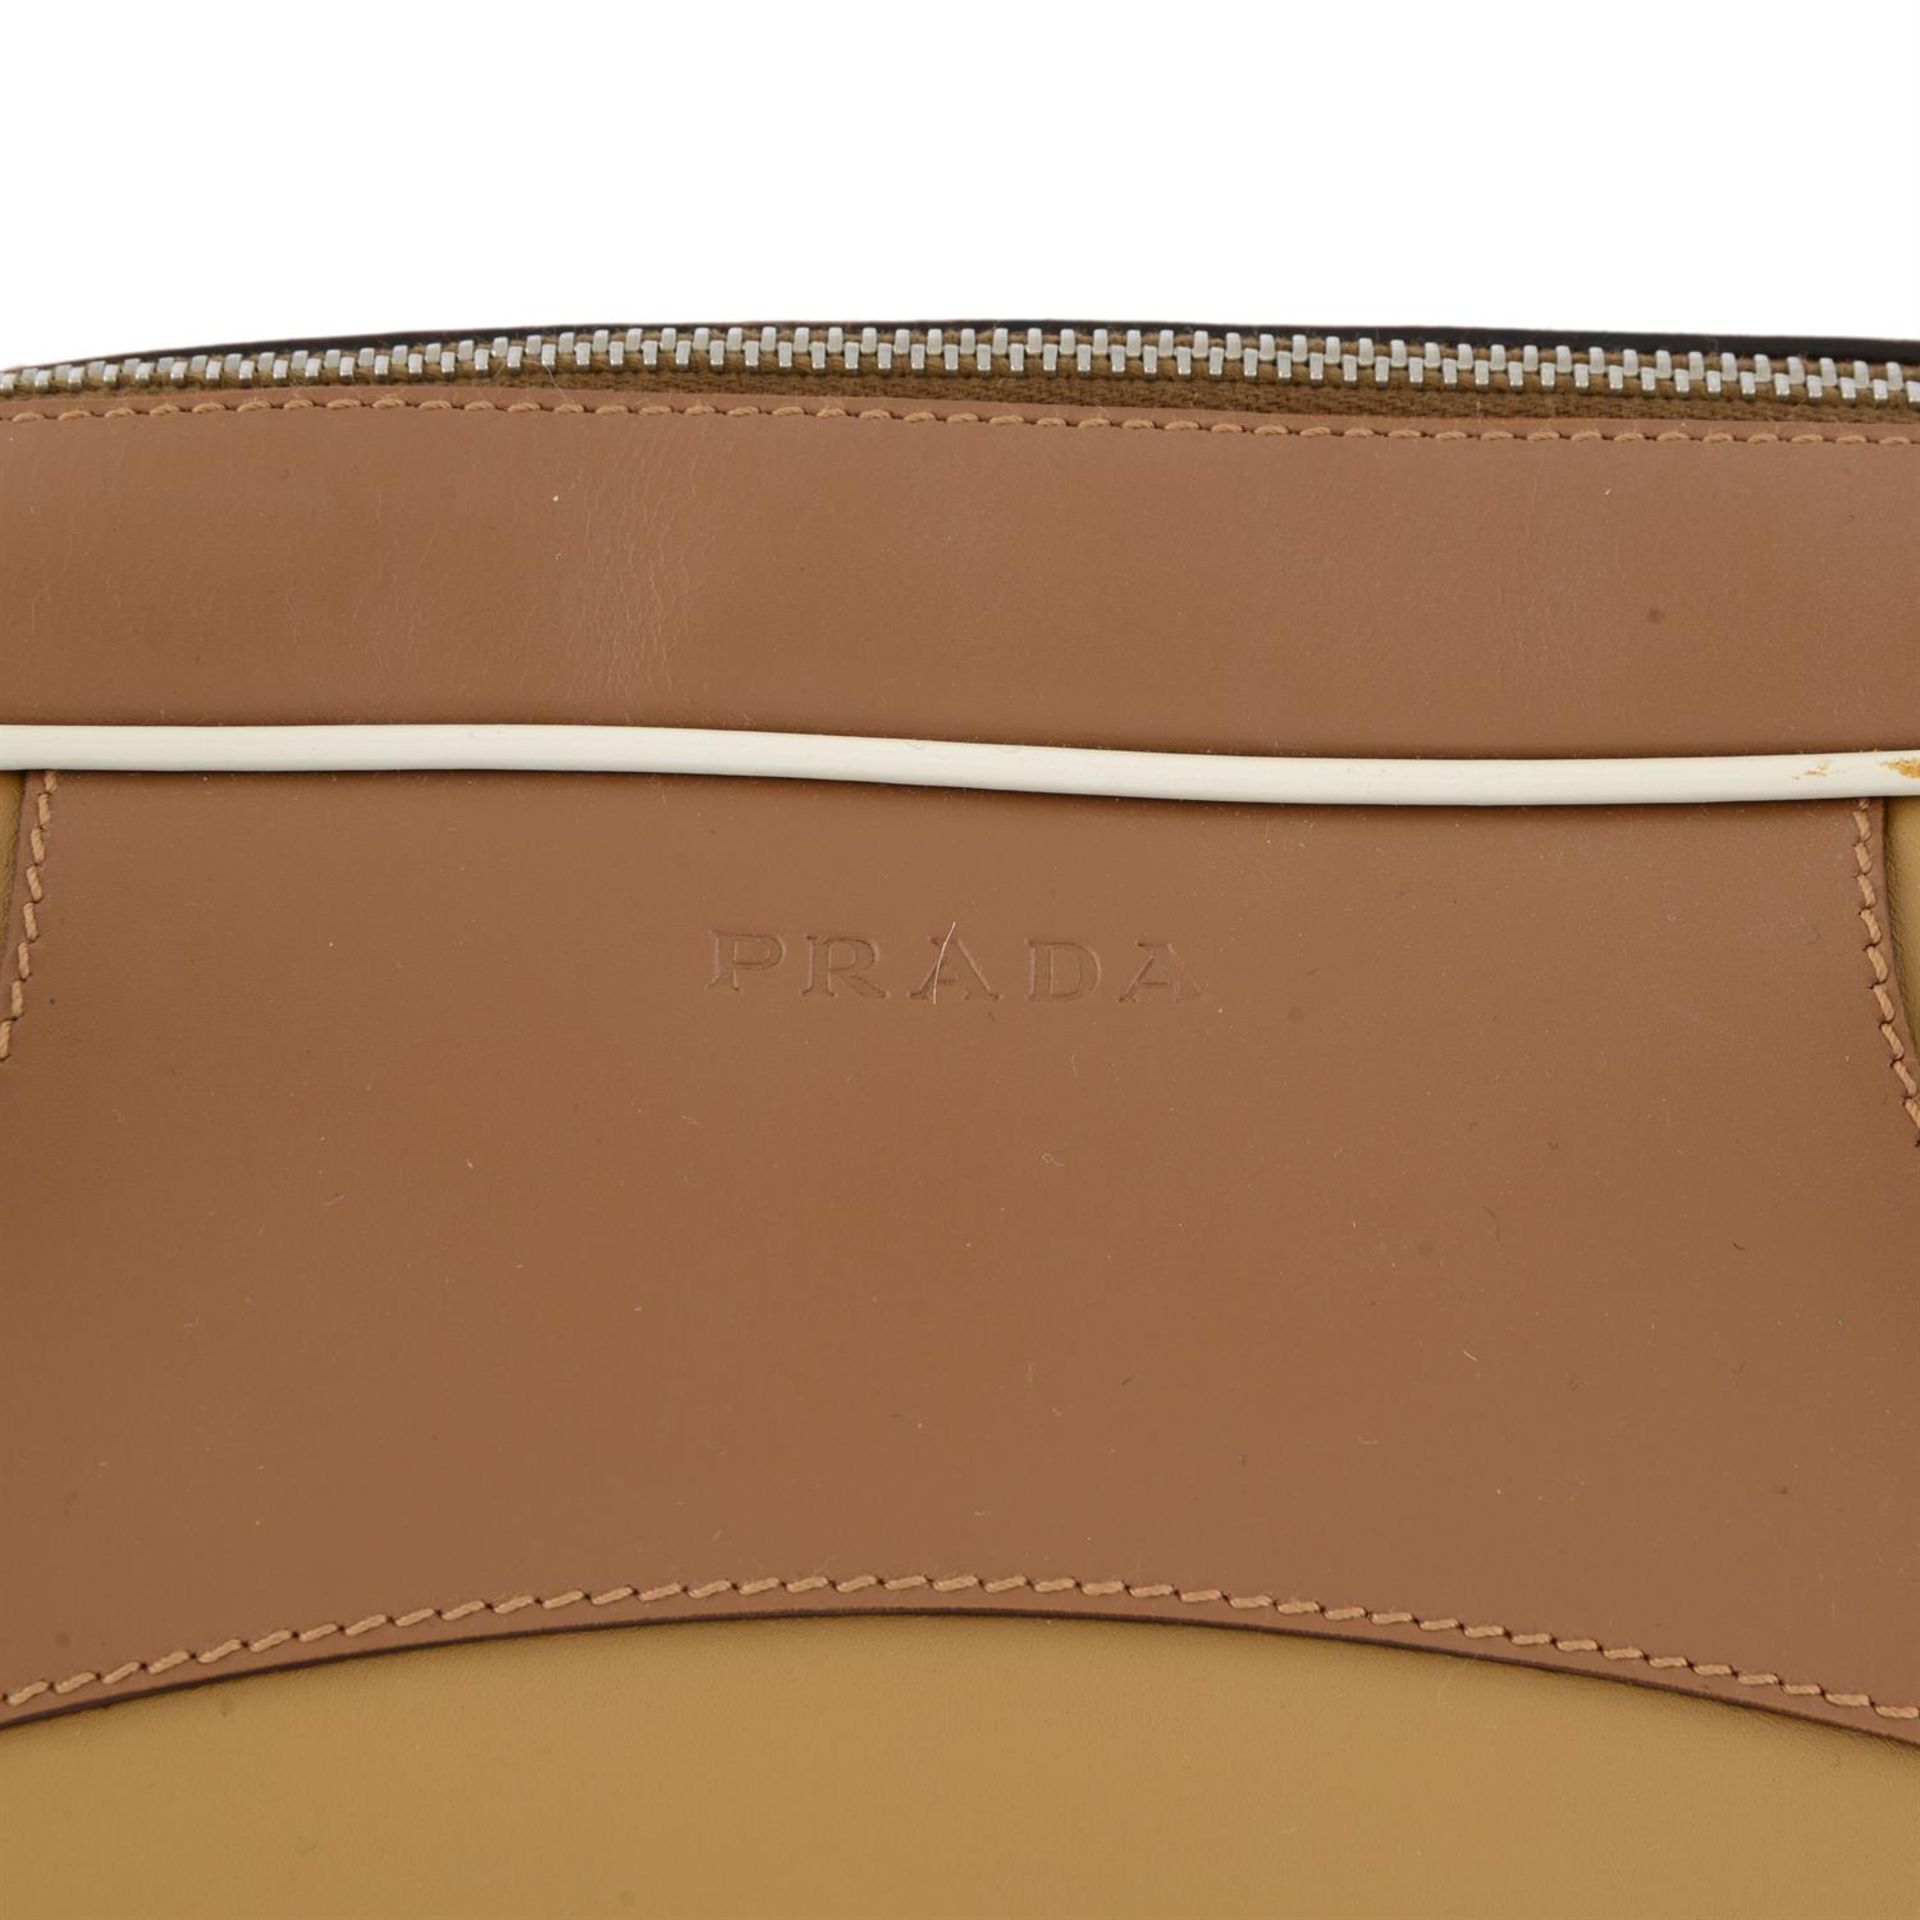 Prada - Bowler bag. - Image 5 of 7